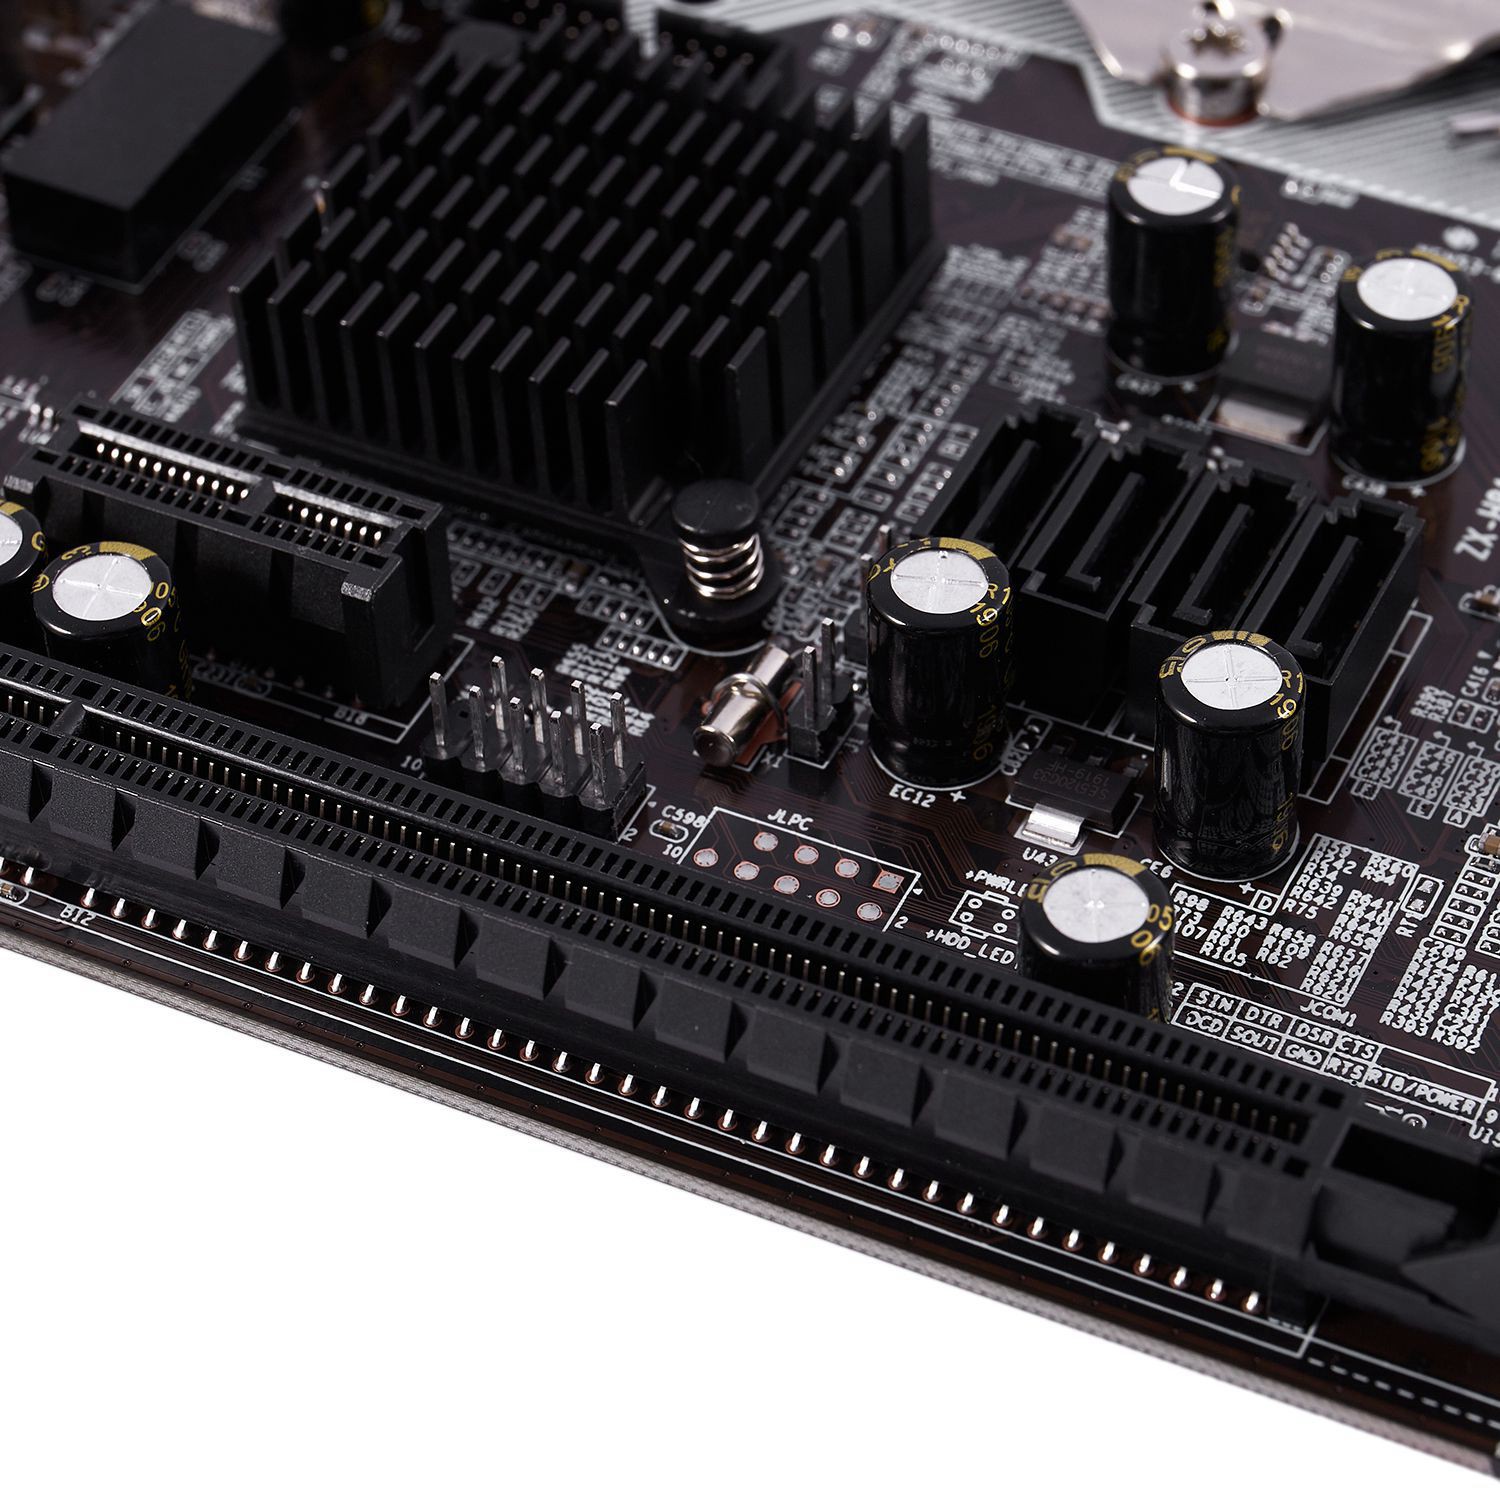 Bo mạch chủ dành cho máy tính H81 LGA 1150 Micro-ATX USB2.0 SATA2.0 2 kênh 32GB DDR3 1600 cho Intel